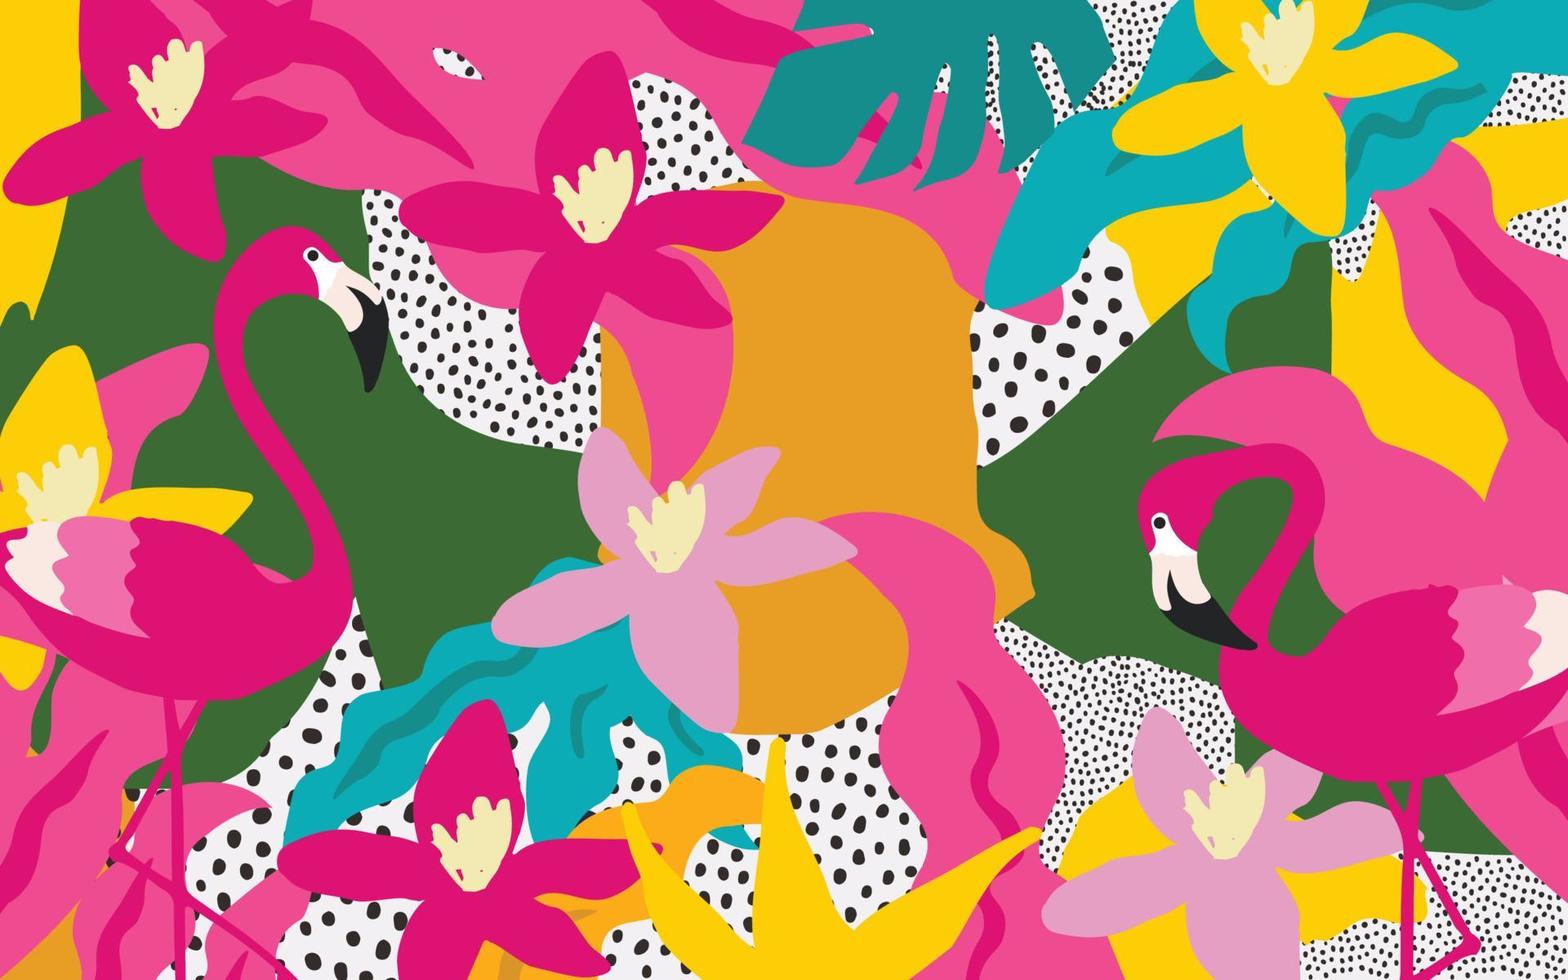 niedliche gartenblumen und blätter mit buntem muster der flamingos. Flamingovögel mit botanischen Elementen, Vektorgrafik-Design für Mode, Stoffe, Tapeten, Karten, Drucke vektor